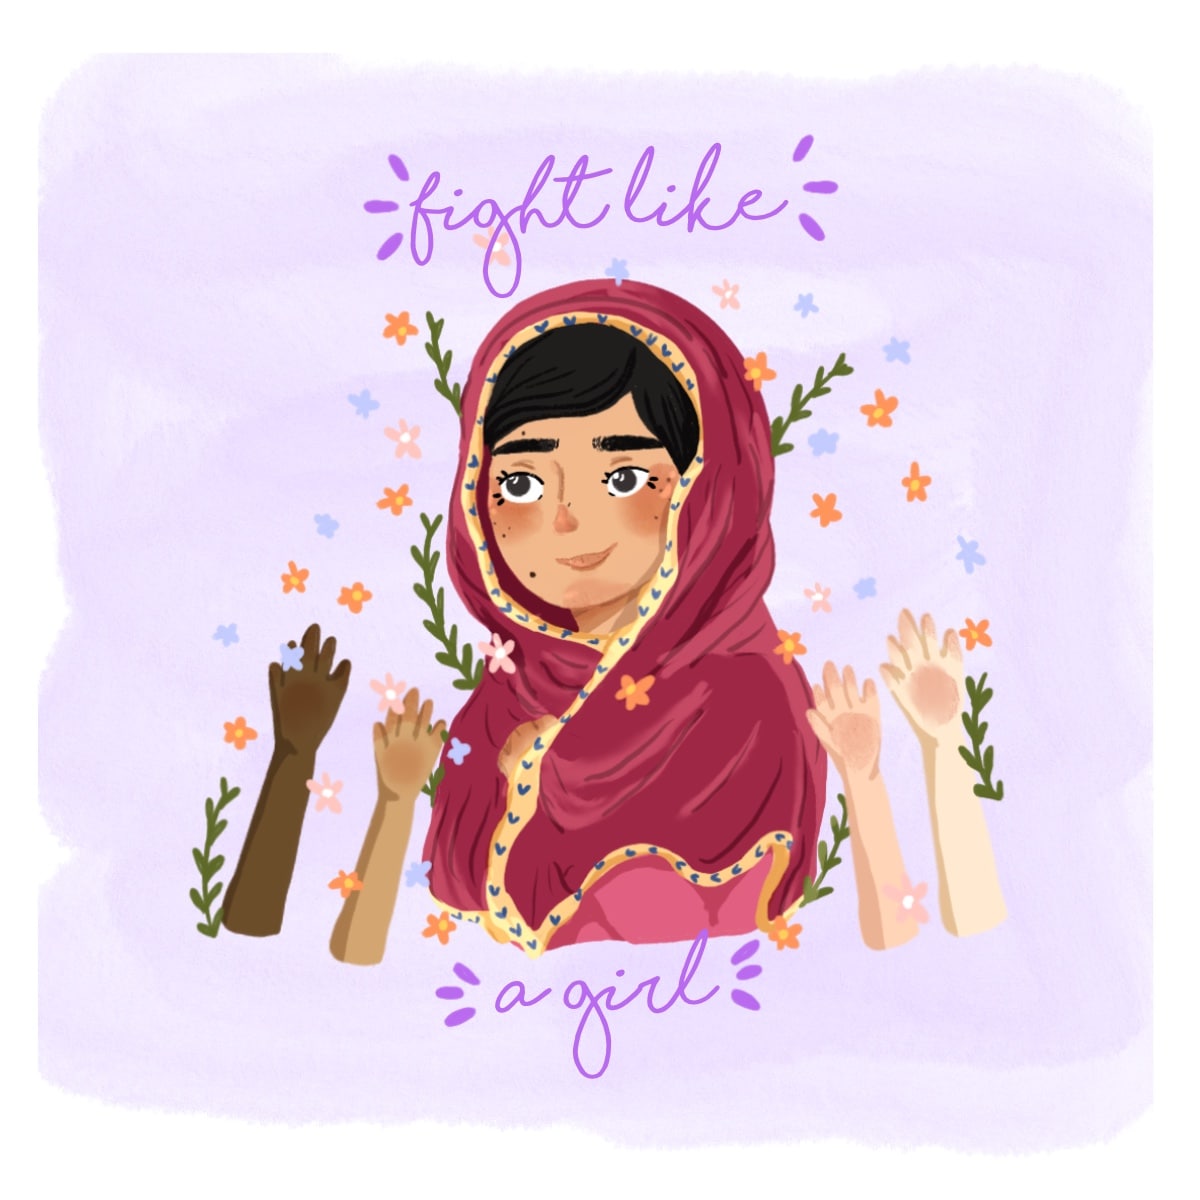 Ilustración de Malala rodeada de puños en alto y flores que dice "fight like a girl" (pelea como una chica)